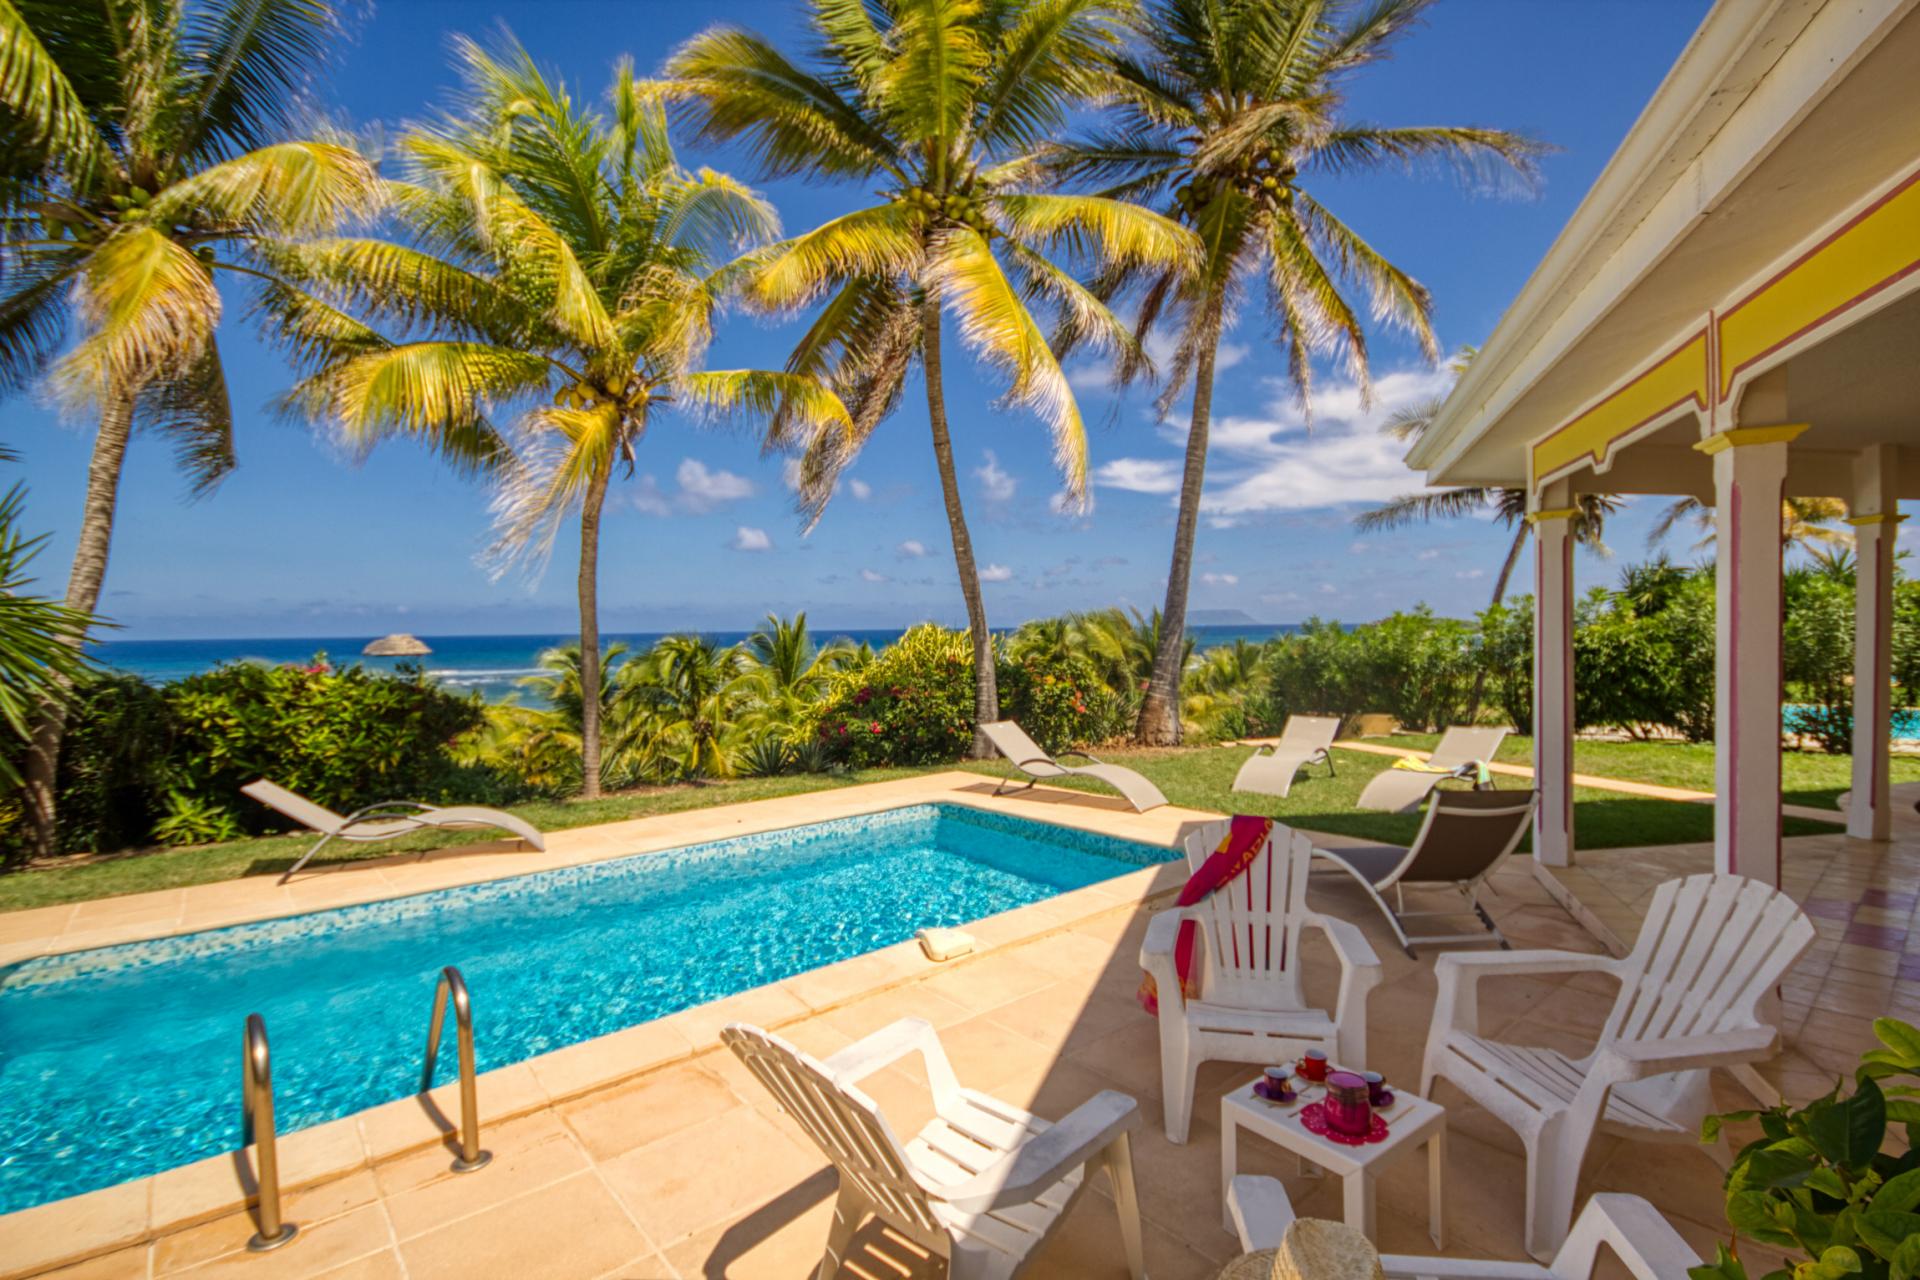 Location villa 3 chambres pour 6 personnes avec piscine et vue mer - Saint François en Guadeloupe